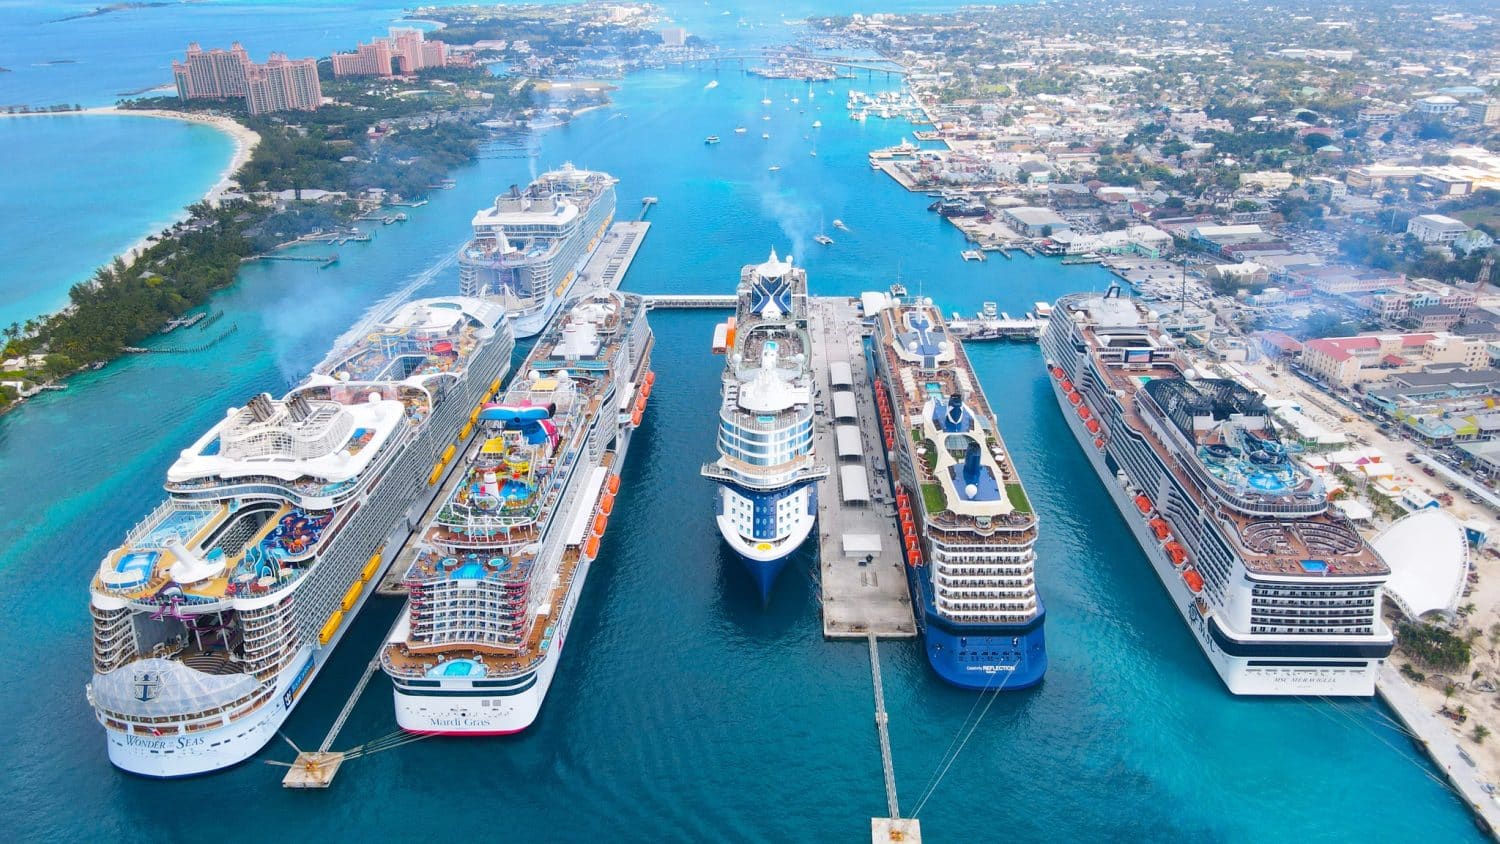 Image of Nassau cruise port with ships docked